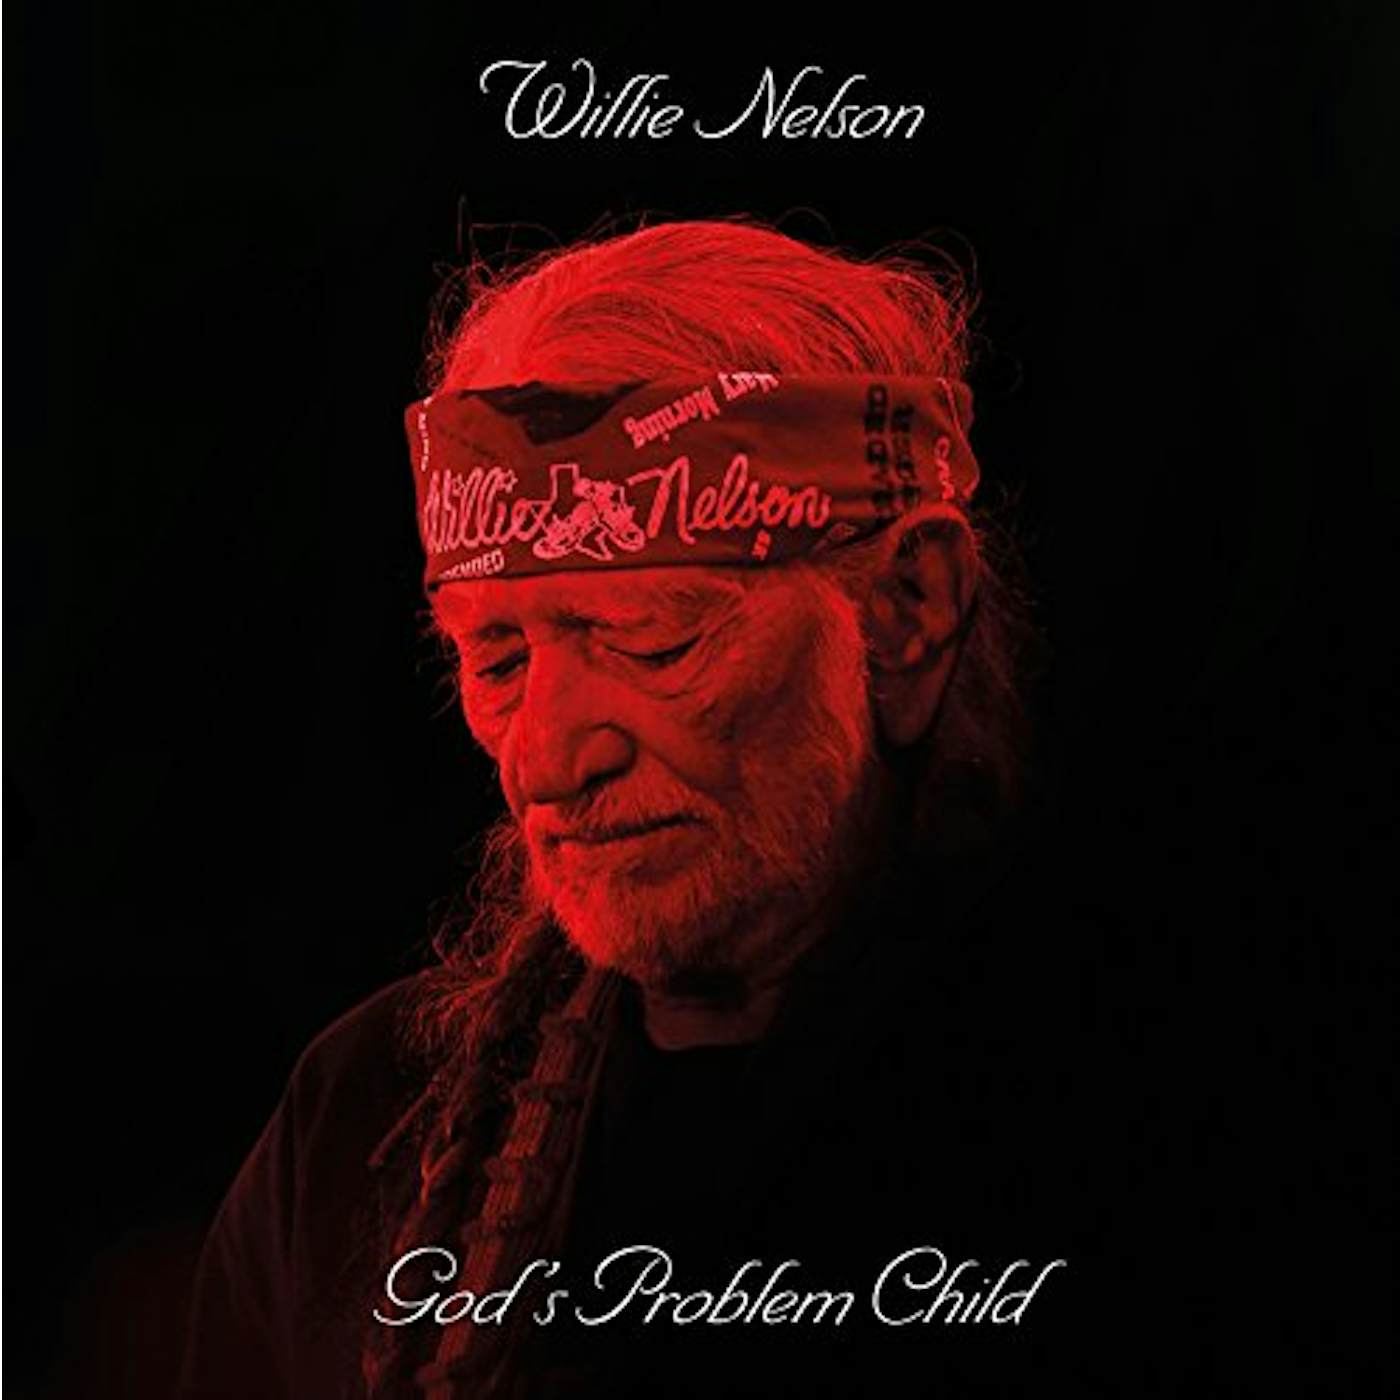 Willie Nelson God's Problem Child Vinyl Record